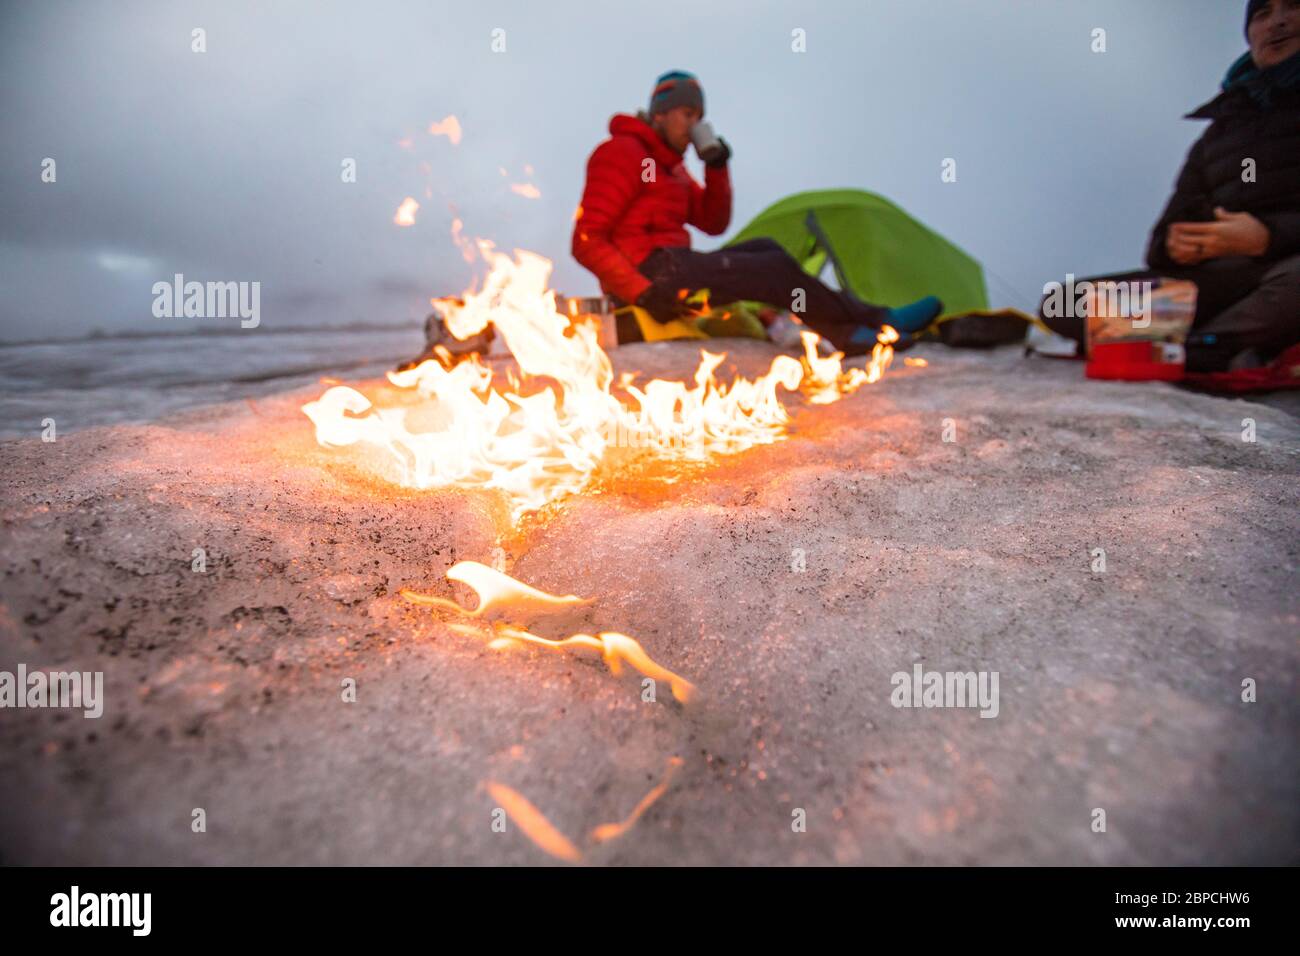 Un feu de camp traverse le glacier tandis que deux hommes campent sur un glacier. Banque D'Images